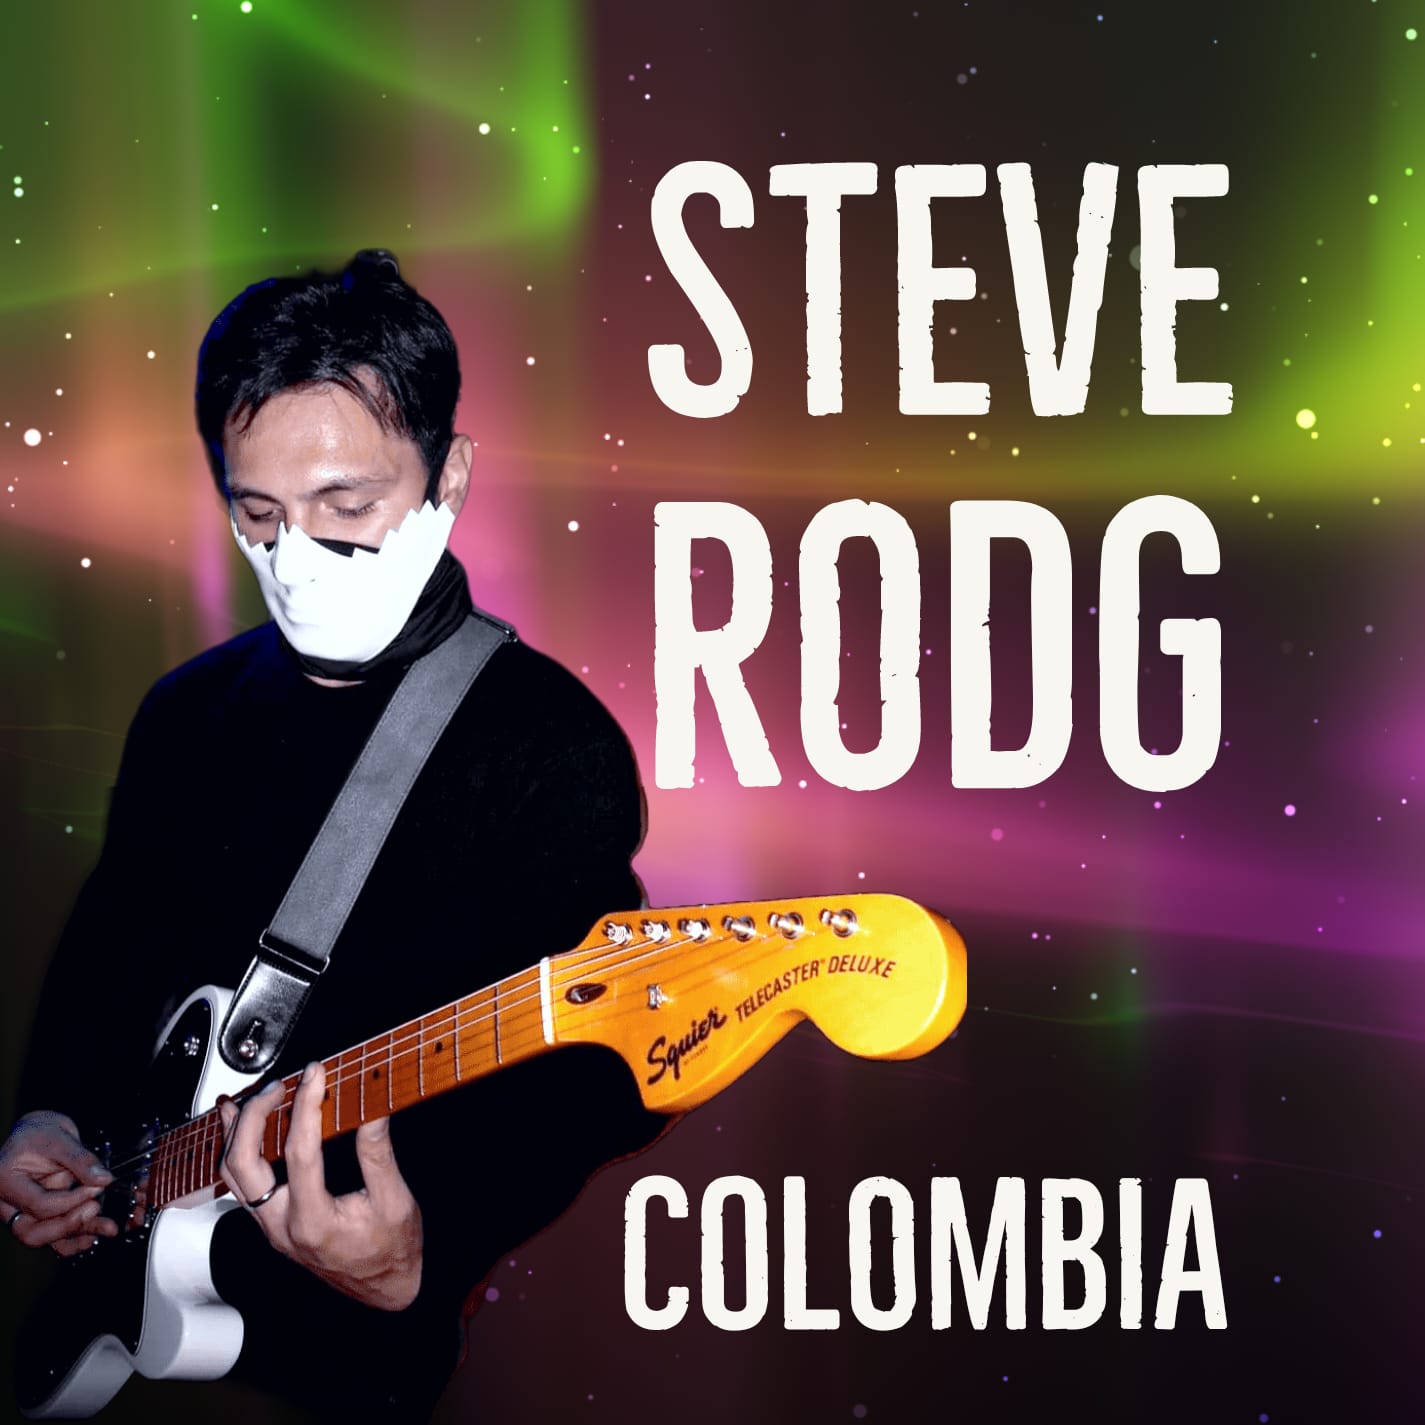 Steve Rodg Nota Rockear.Co